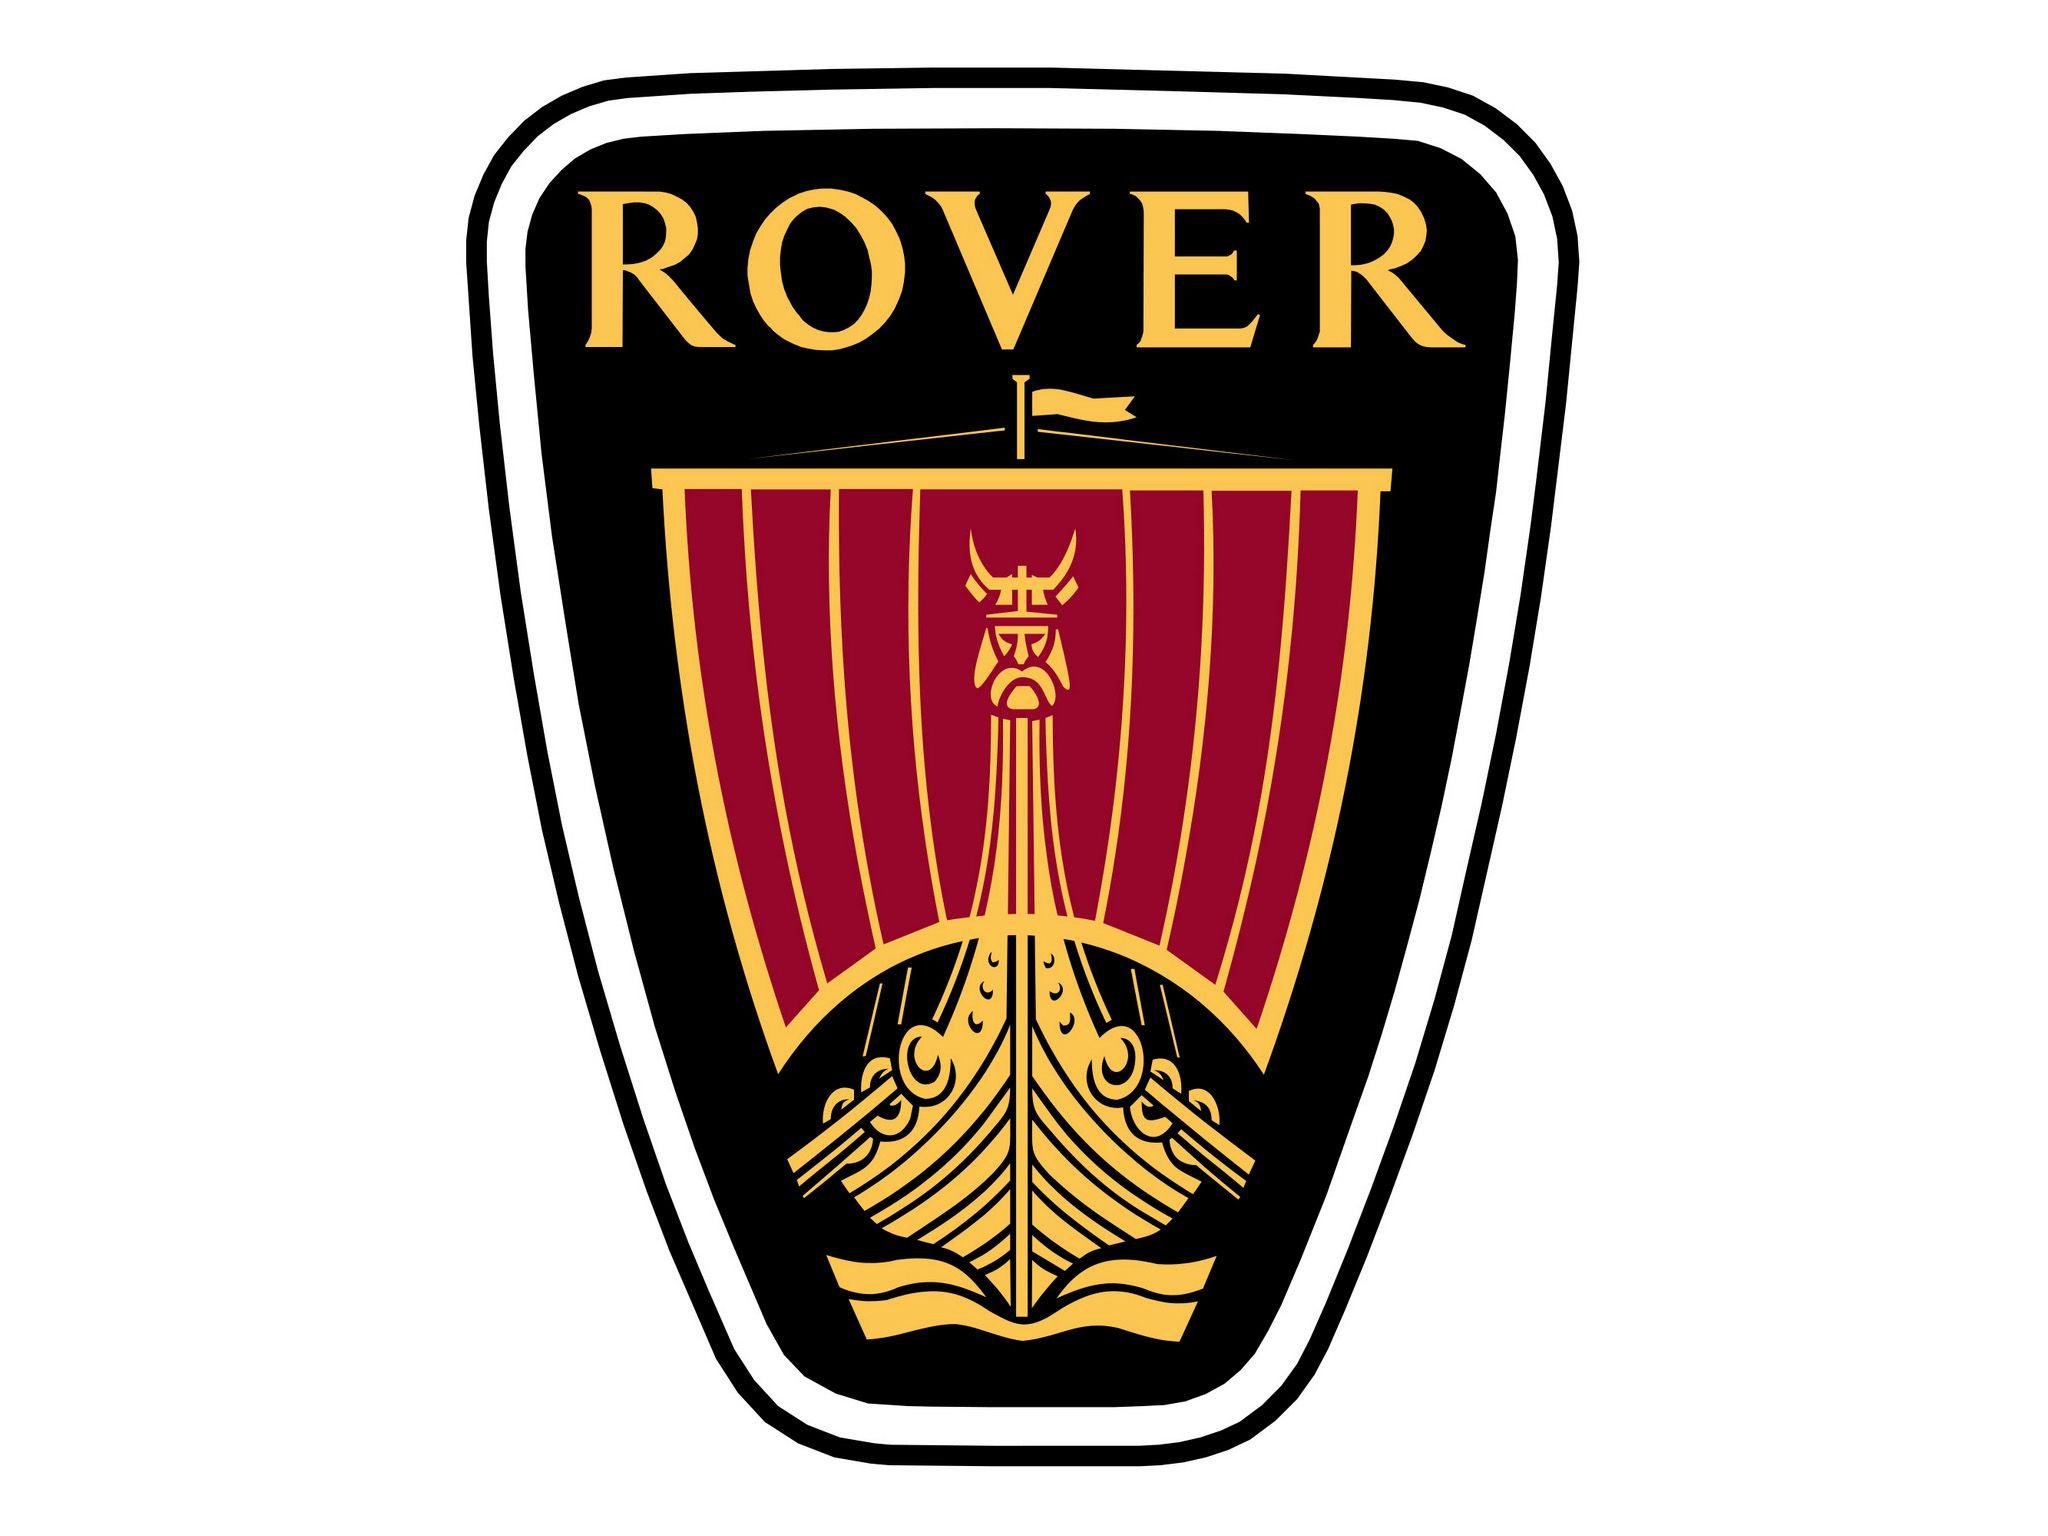 Rover Logo - Rover Logo, Rover Car Symbol Meaning And History | Car Brand Names.com